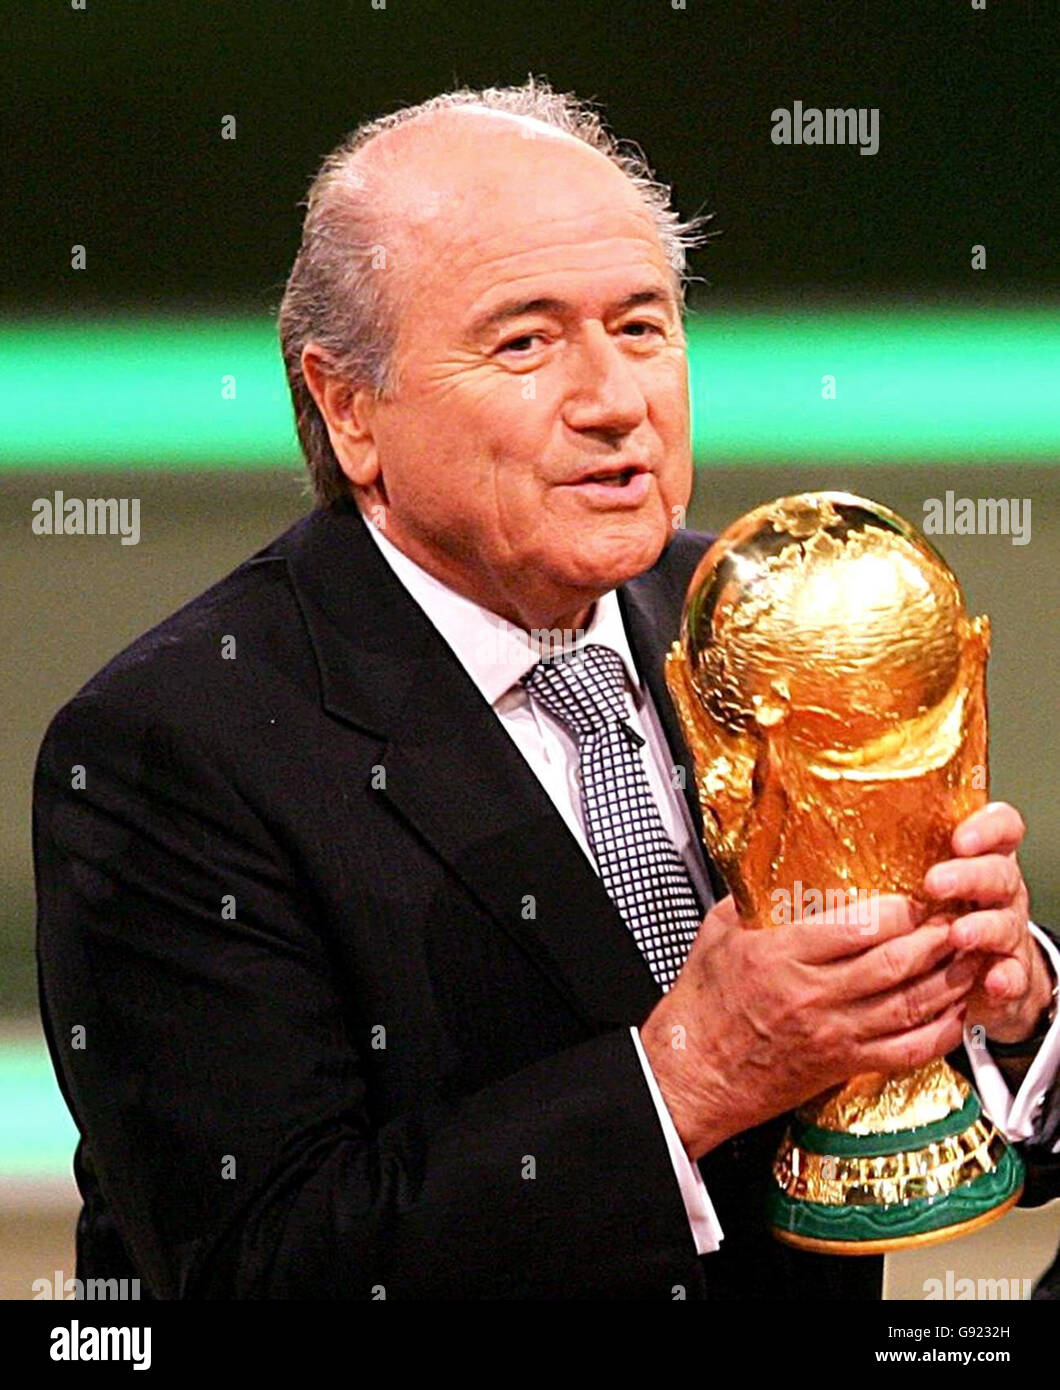 Il presidente della FIFA Sepp Blatter con il trofeo della Coppa del mondo durante la cerimonia in vista dell'estrazione della Coppa del mondo FIFA 2006, a Lipsia, Germania, venerdì 9 dicembre 2005. Guarda la storia della PA SOCCER World Cup. PREMERE ASSOCIAZIONE foto. Il credito fotografico dovrebbe essere: PA Foto Stock